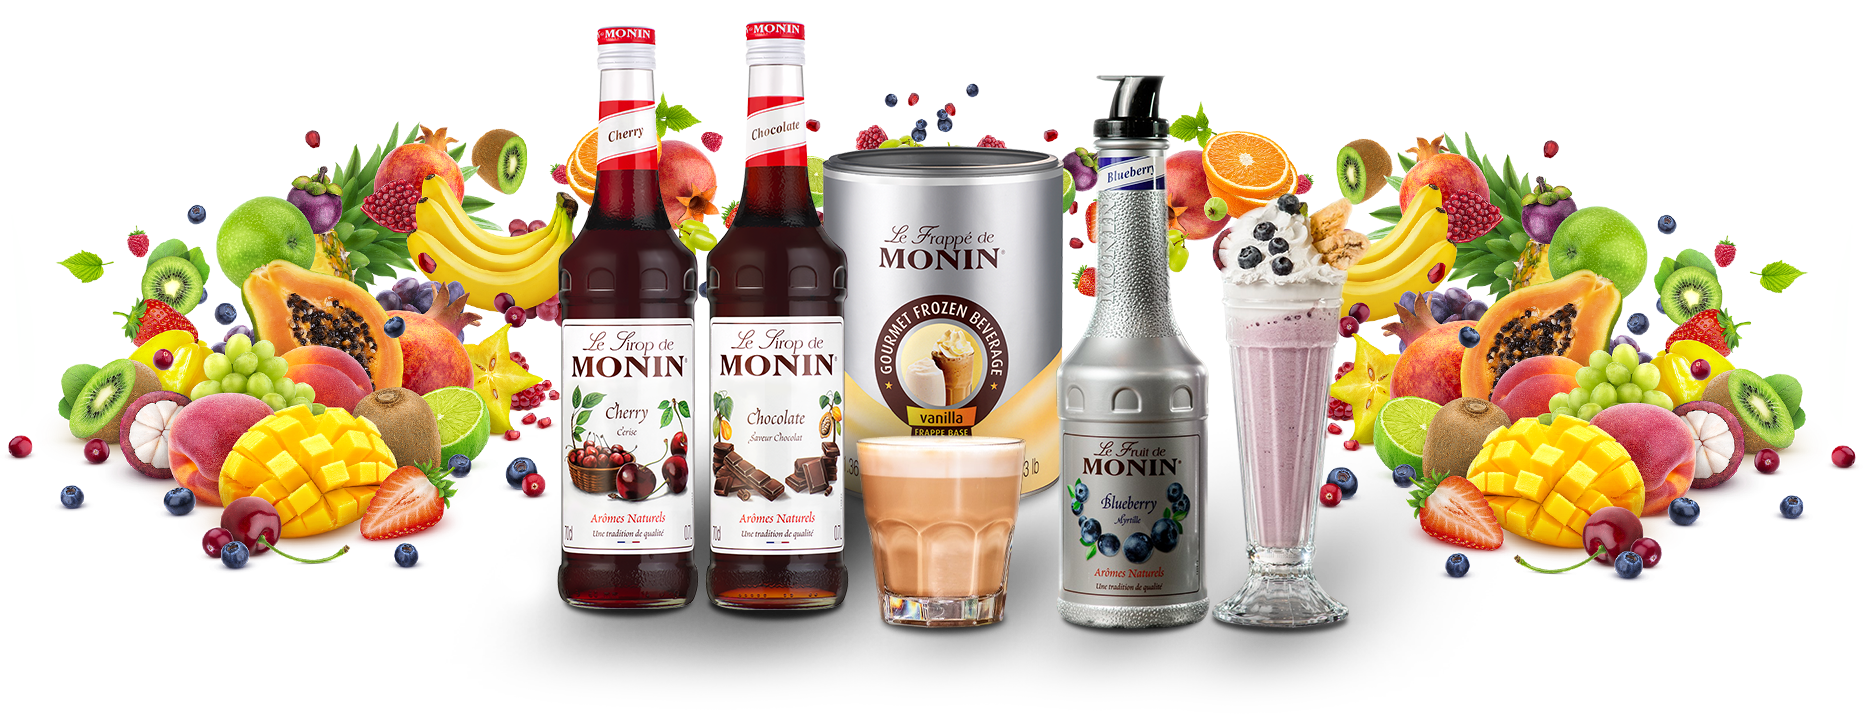 Produkty Monin w wielu smakach